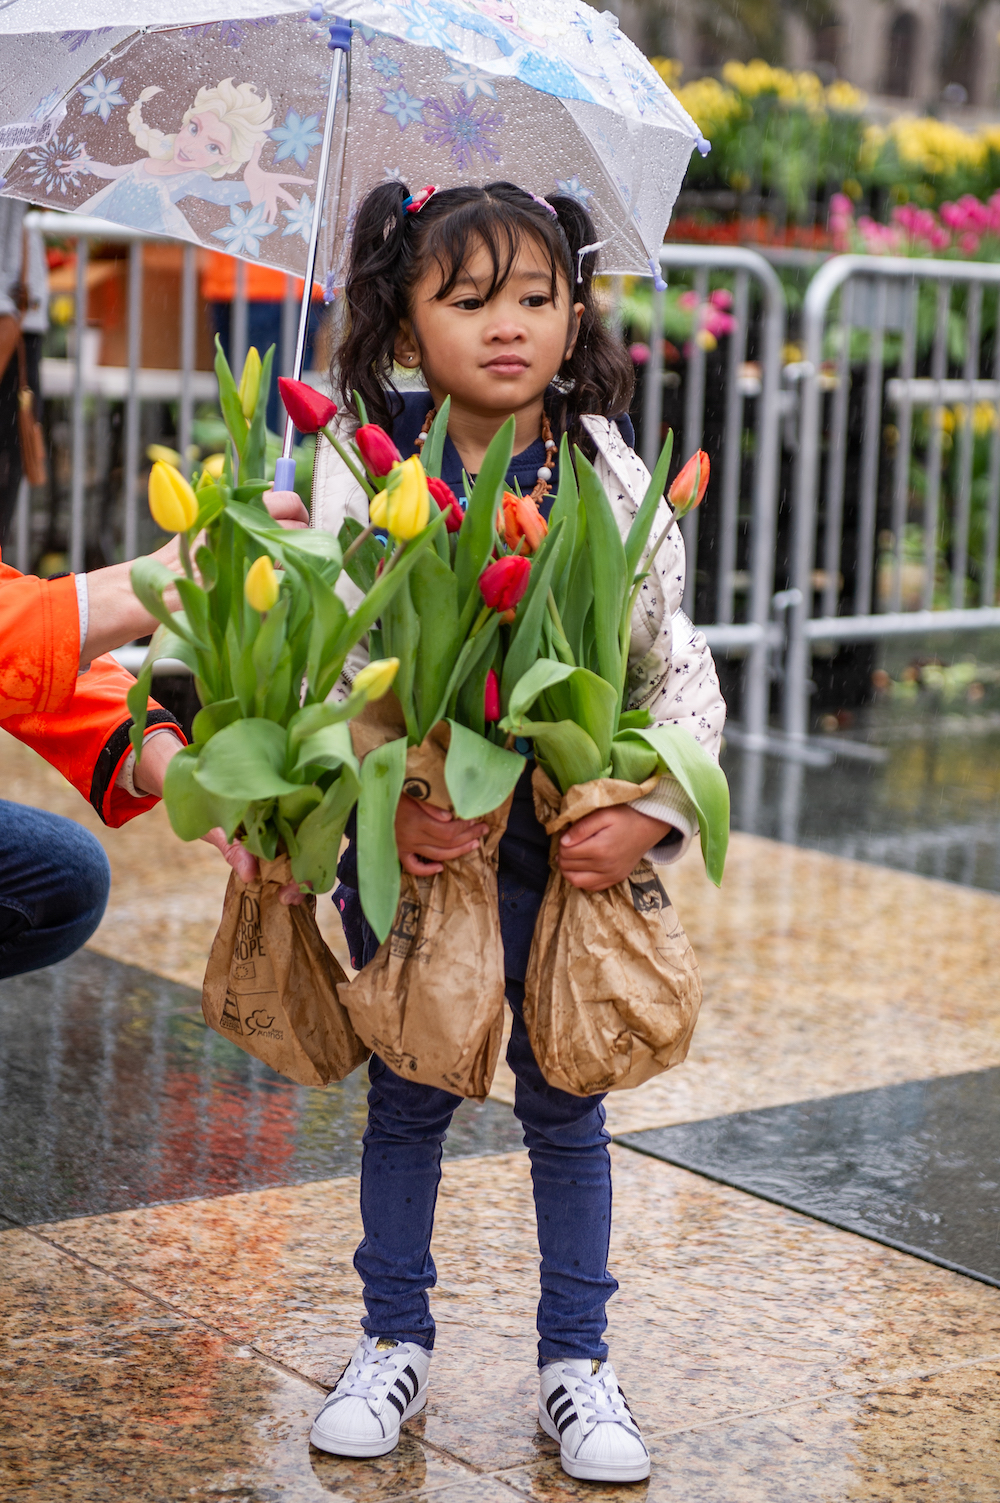 Flower Bulb Day 2022 in San Francisco - on Thursd